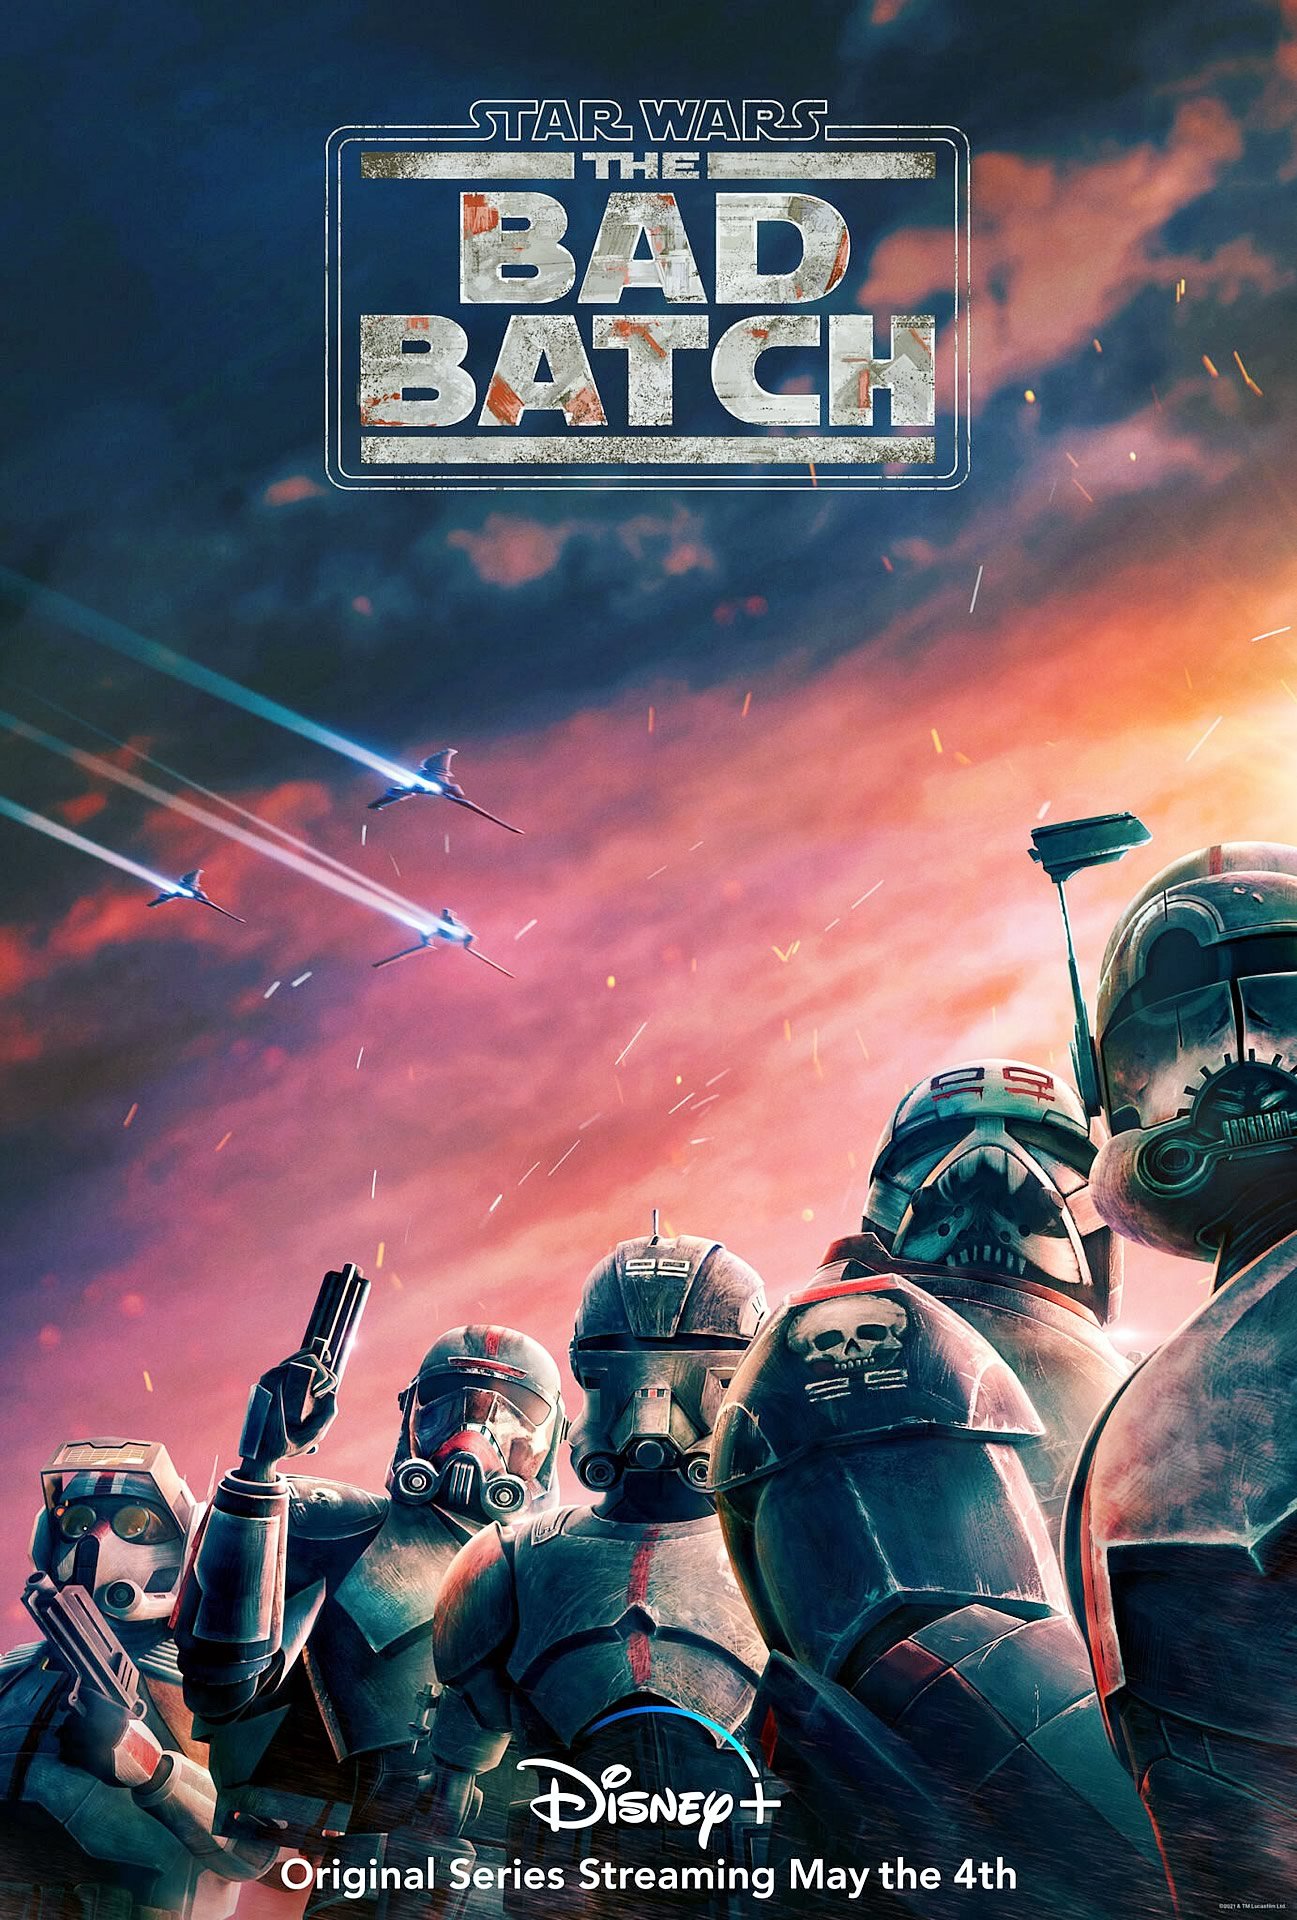 The Bad Batch | Disney Plus divulga novo trailer da série animada de Star Wars